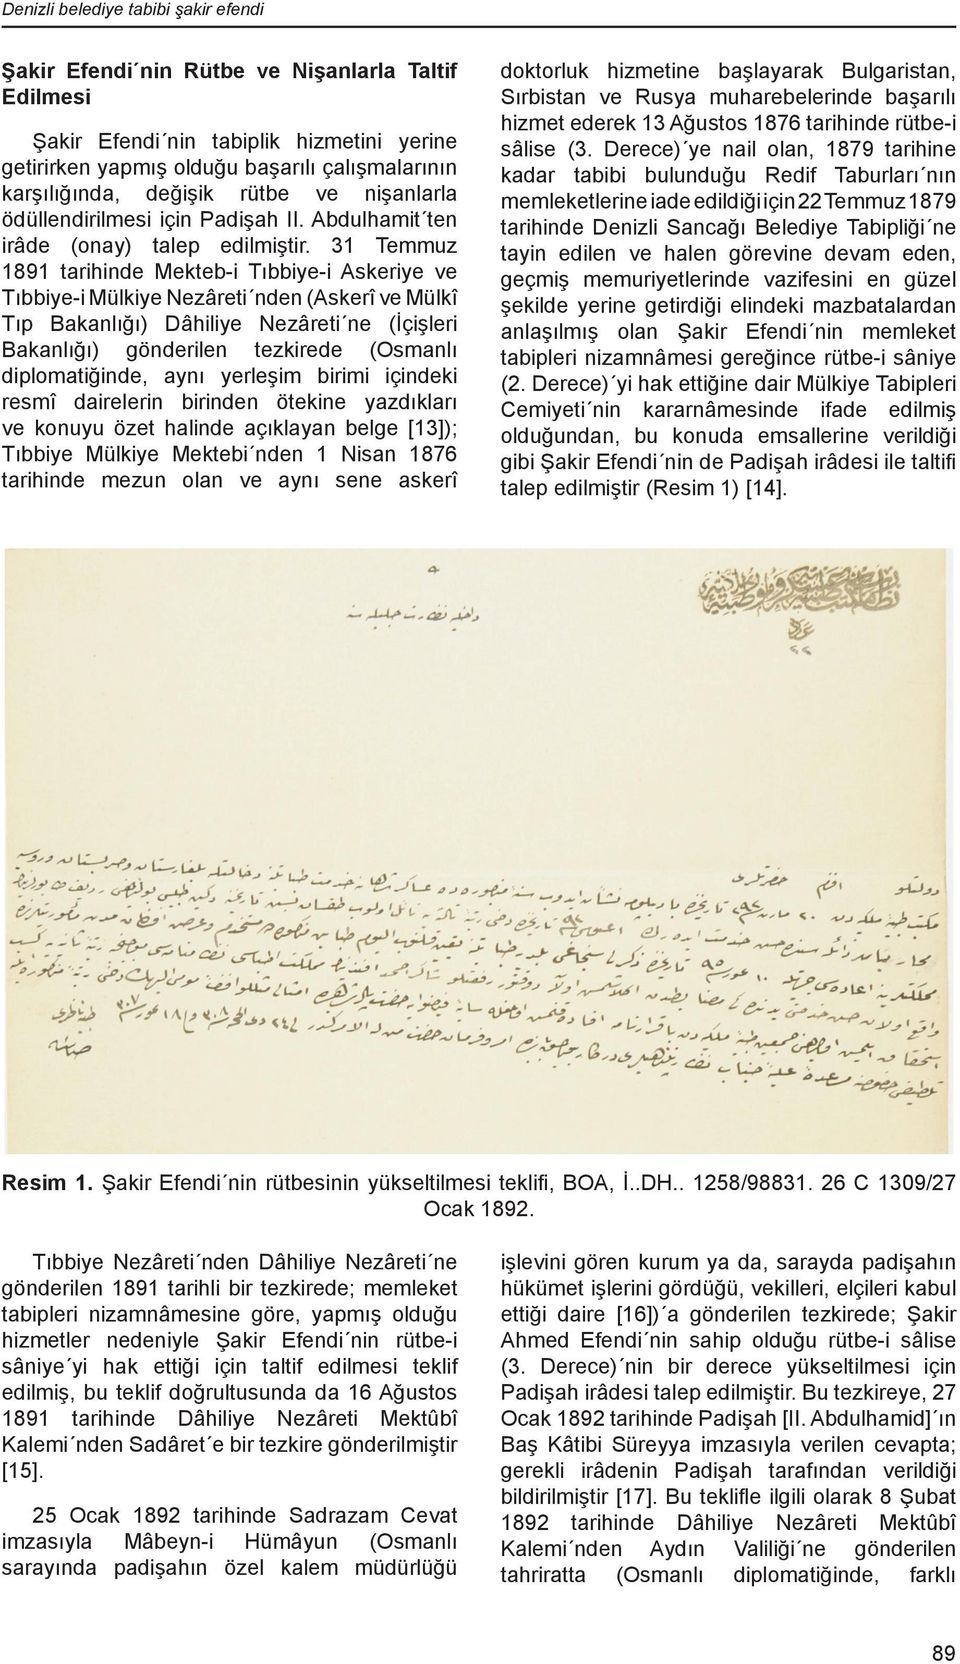 31 Temmuz 1891 tarihinde Mekteb-i Tıbbiye-i Askeriye ve Tıbbiye-i Mülkiye Nezâreti nden (Askerî ve Mülkî Tıp Bakanlığı) Dâhiliye Nezâreti ne (İçişleri Bakanlığı) gönderilen tezkirede (Osmanlı